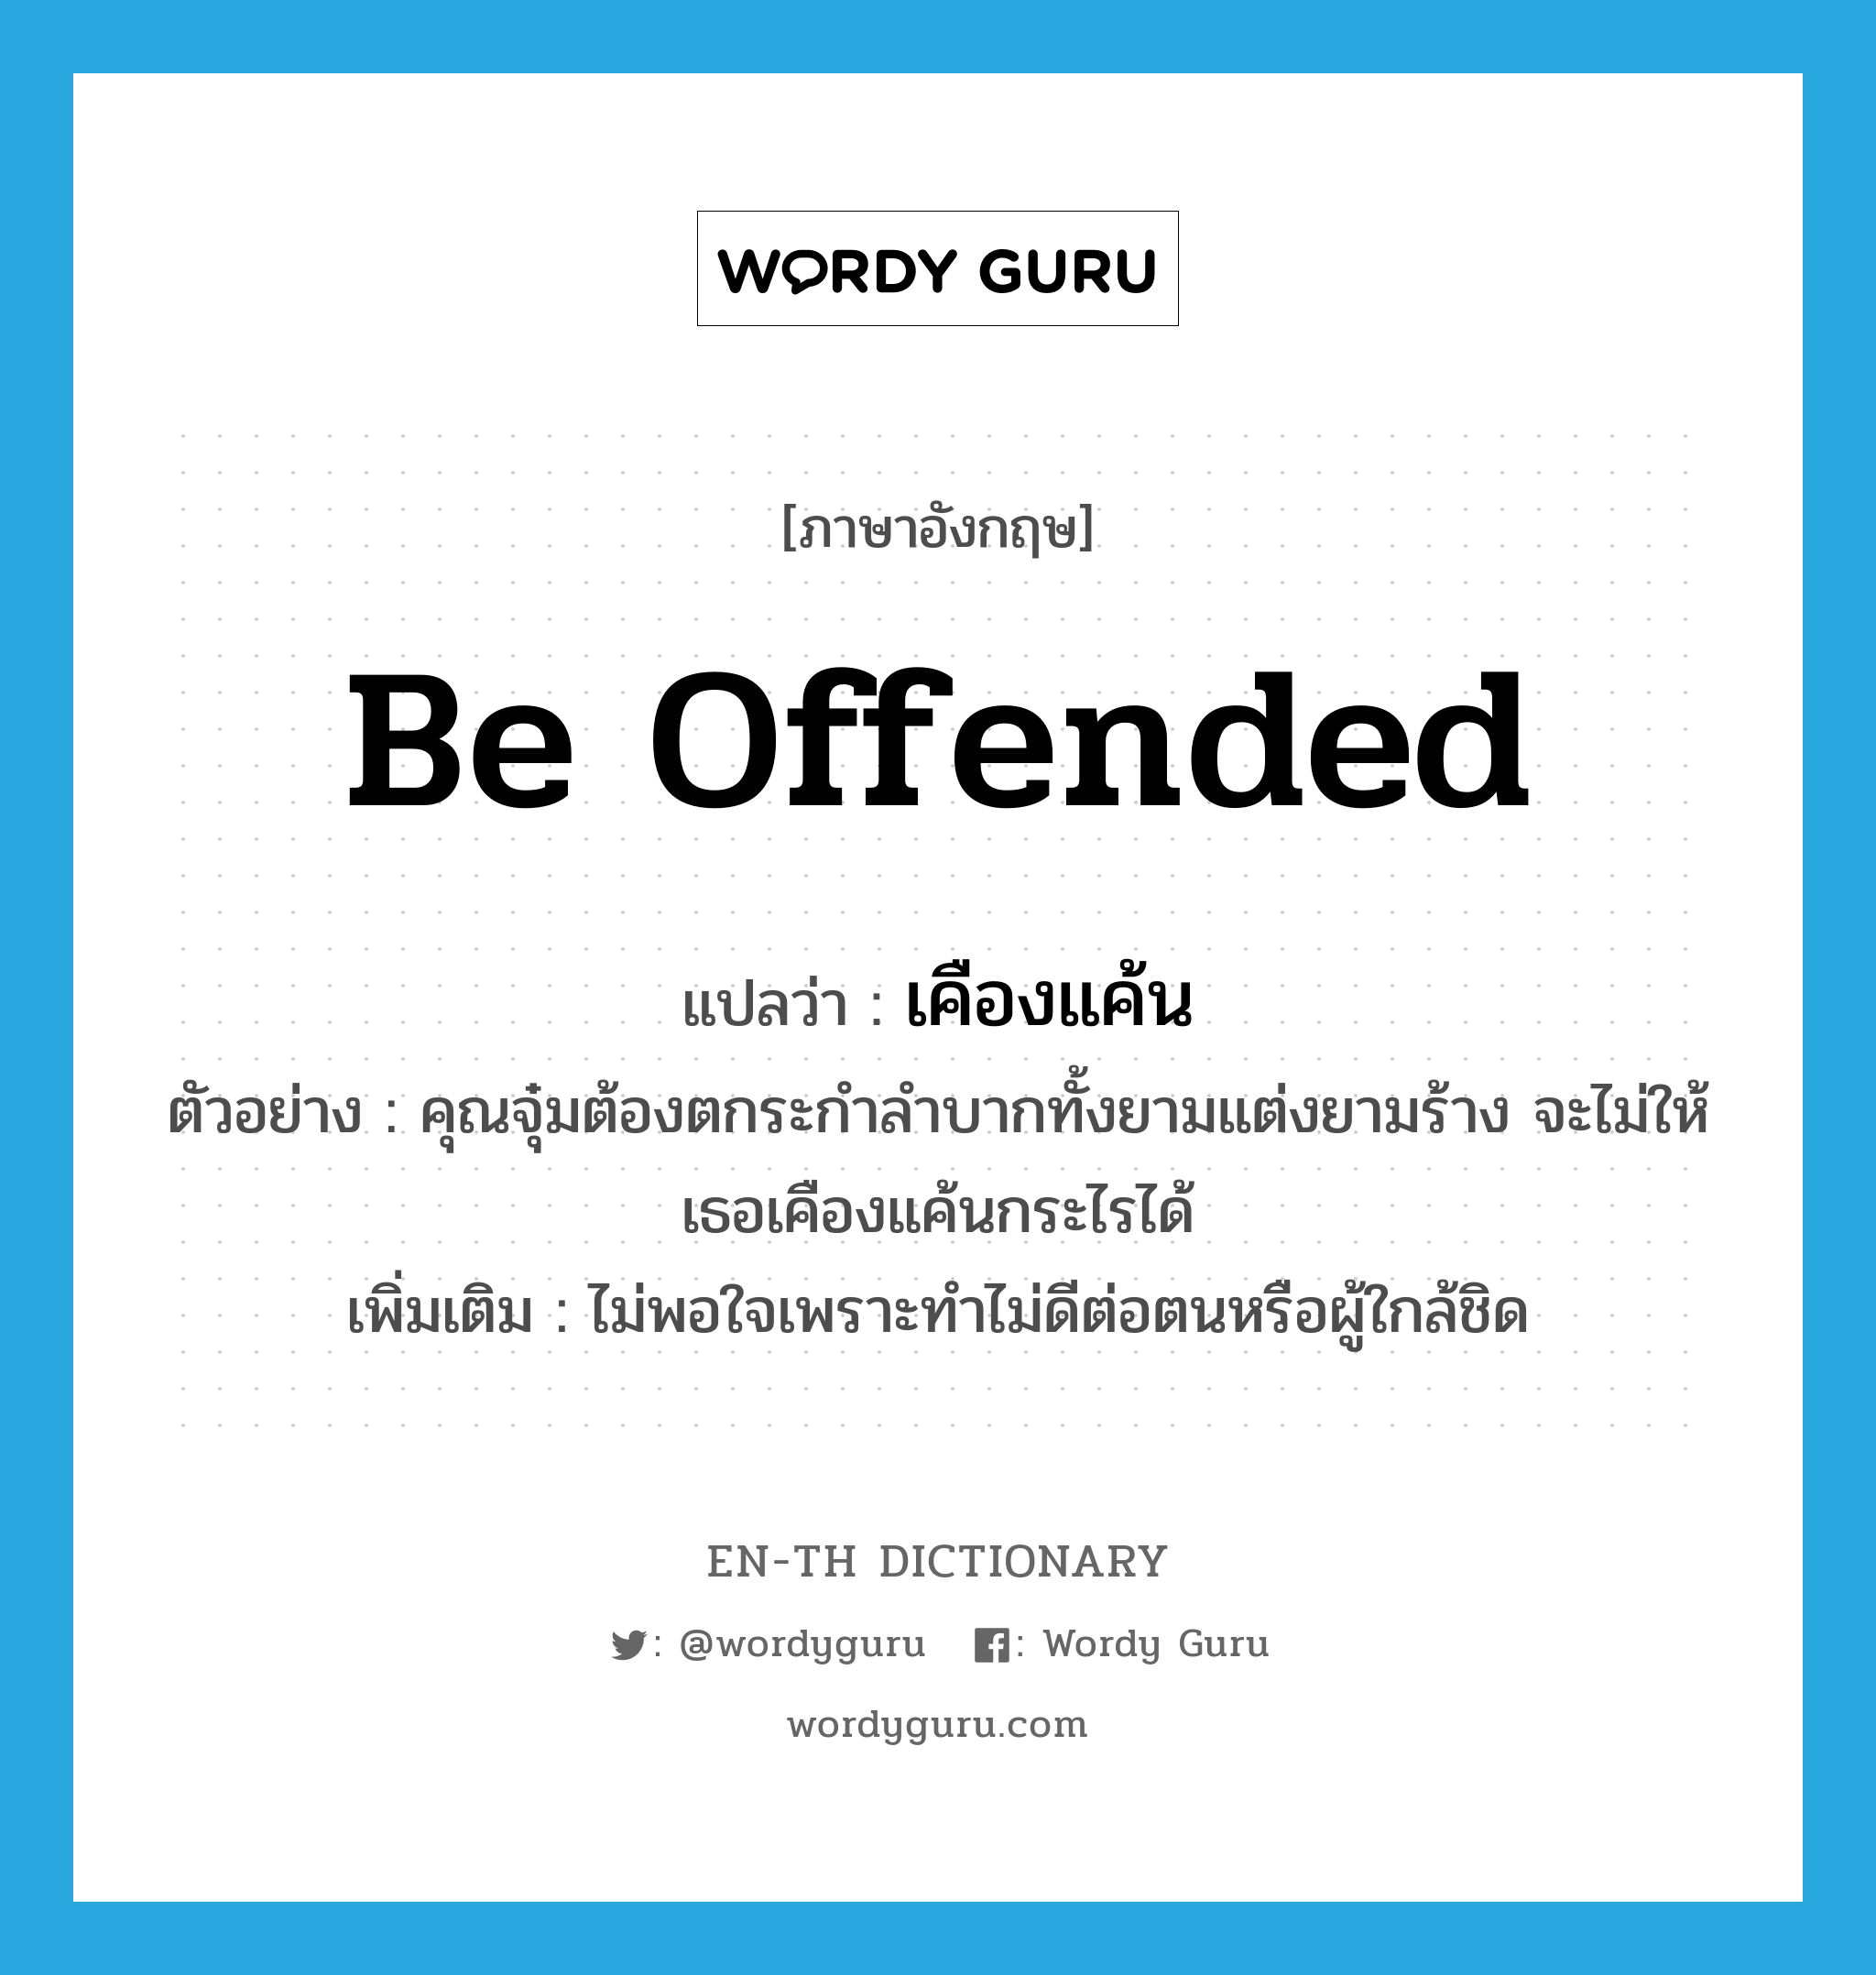 be offended แปลว่า?, คำศัพท์ภาษาอังกฤษ be offended แปลว่า เคืองแค้น ประเภท V ตัวอย่าง คุณจุ๋มต้องตกระกำลำบากทั้งยามแต่งยามร้าง จะไม่ให้เธอเคืองแค้นกระไรได้ เพิ่มเติม ไม่พอใจเพราะทำไม่ดีต่อตนหรือผู้ใกล้ชิด หมวด V